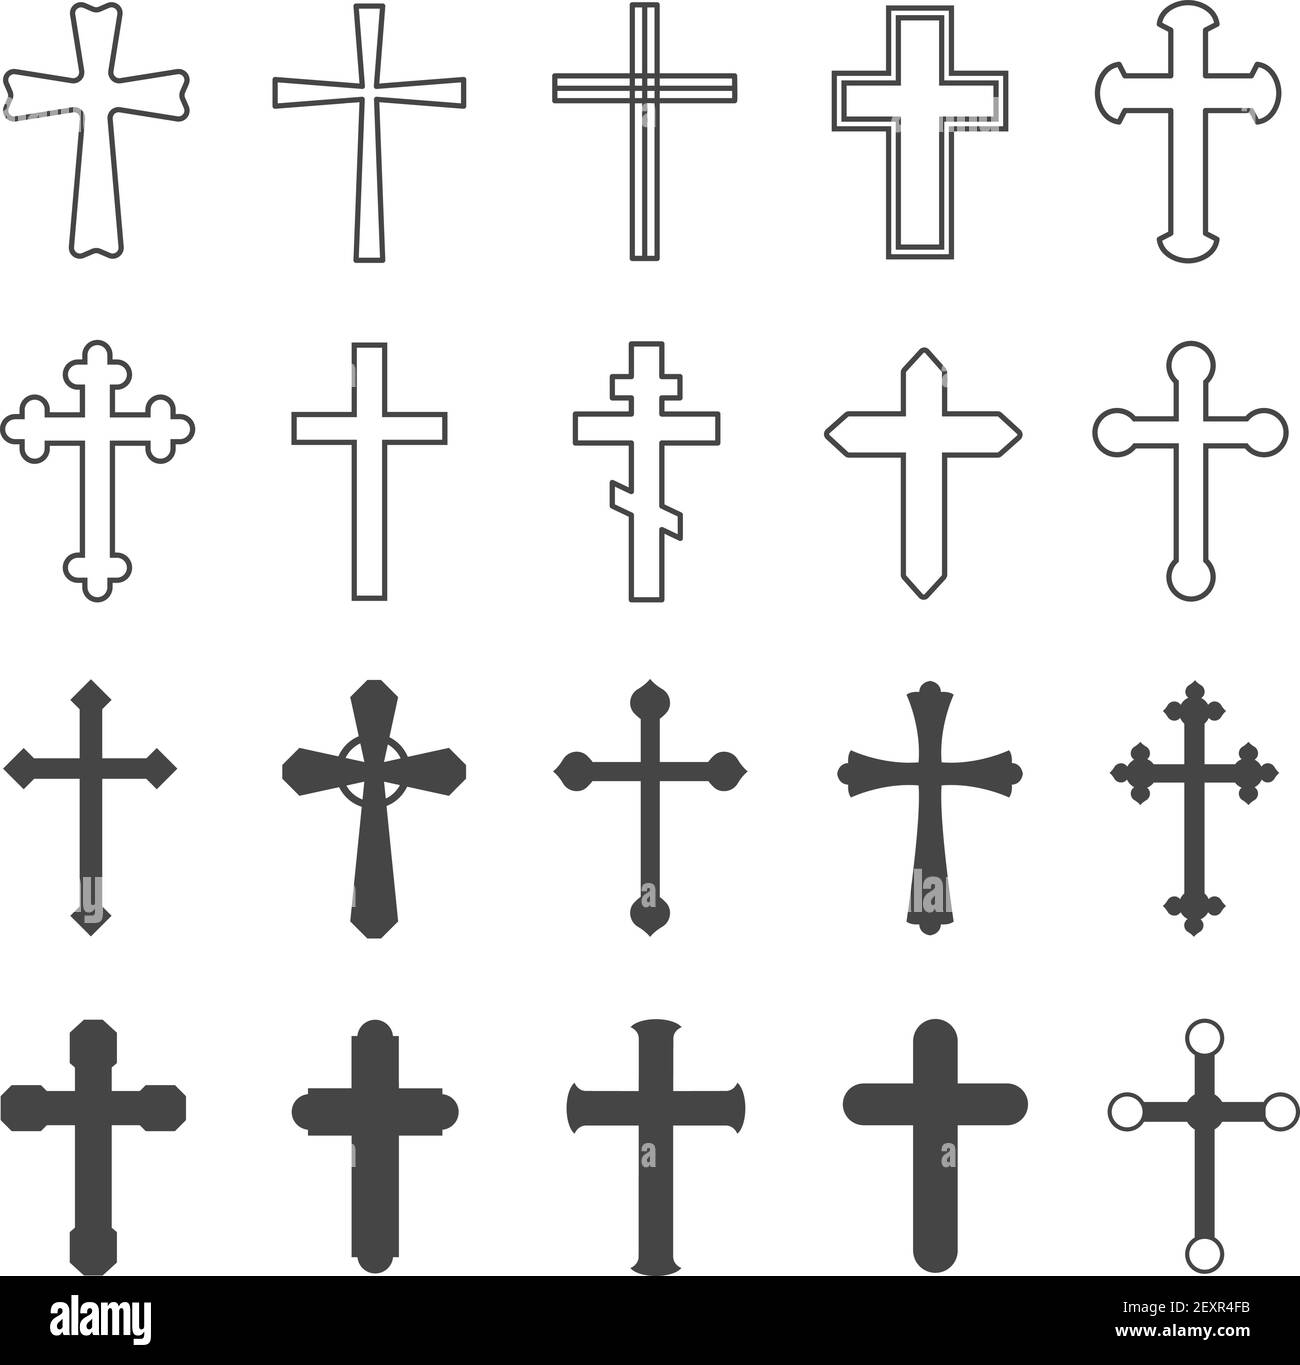 Croix chrétienne. Décoration de religion crucifix symbole catholique,  église orthodoxe de foi conception croisée, ensemble de vecteur plat isolé  Image Vectorielle Stock - Alamy